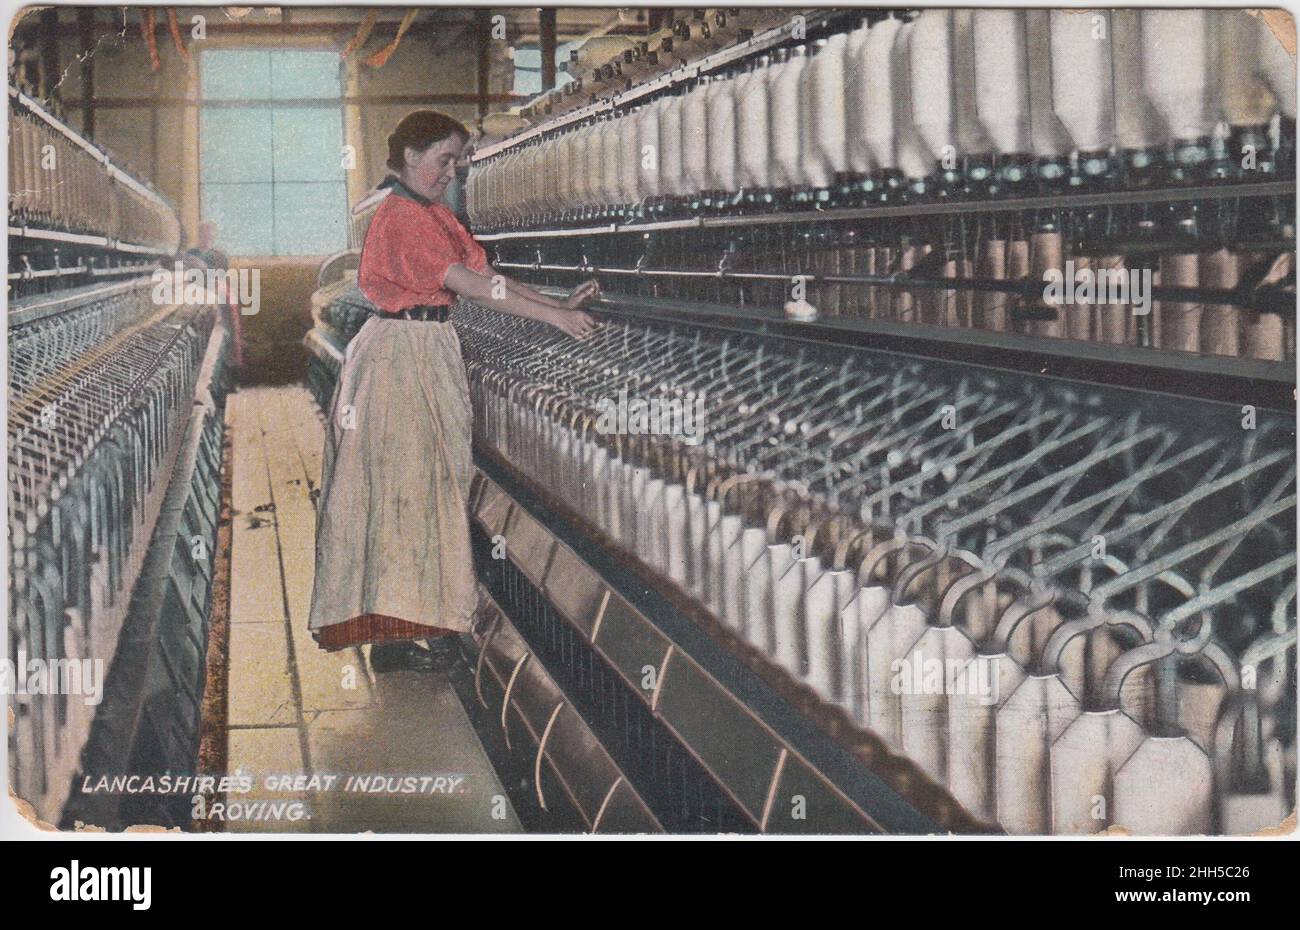 « The Great Industry: Roving » : une femme se tenant à côté des machines de l'usine.La carte postale colorisée a été publiée par L. Pickles & Co. De Bradford et a été publiée en 1920 Banque D'Images